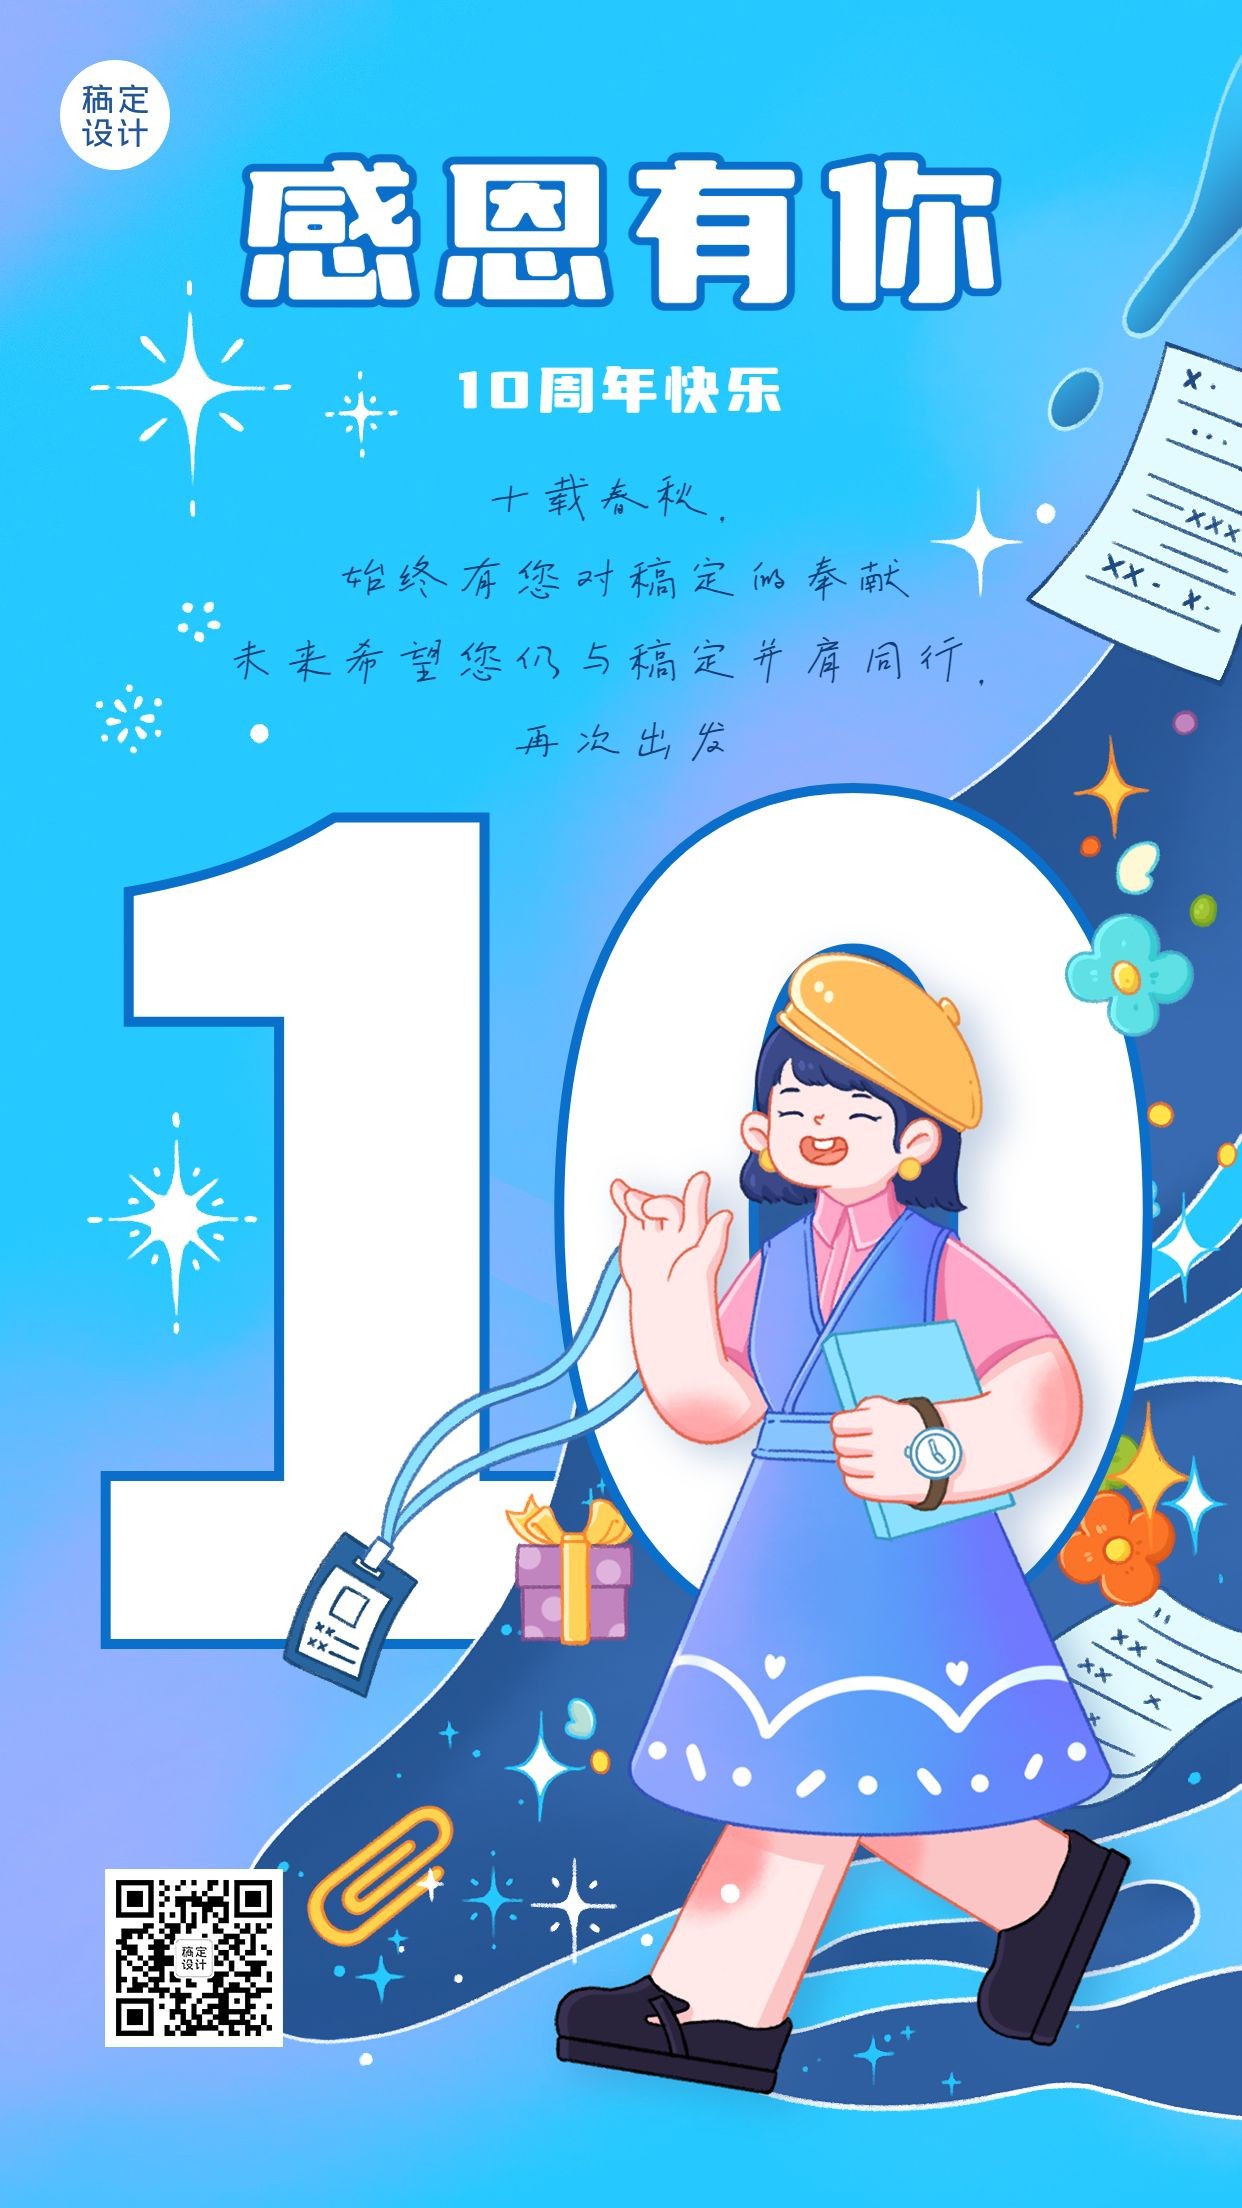 企业为商务员工10周年祝福贺卡插画手机海报预览效果